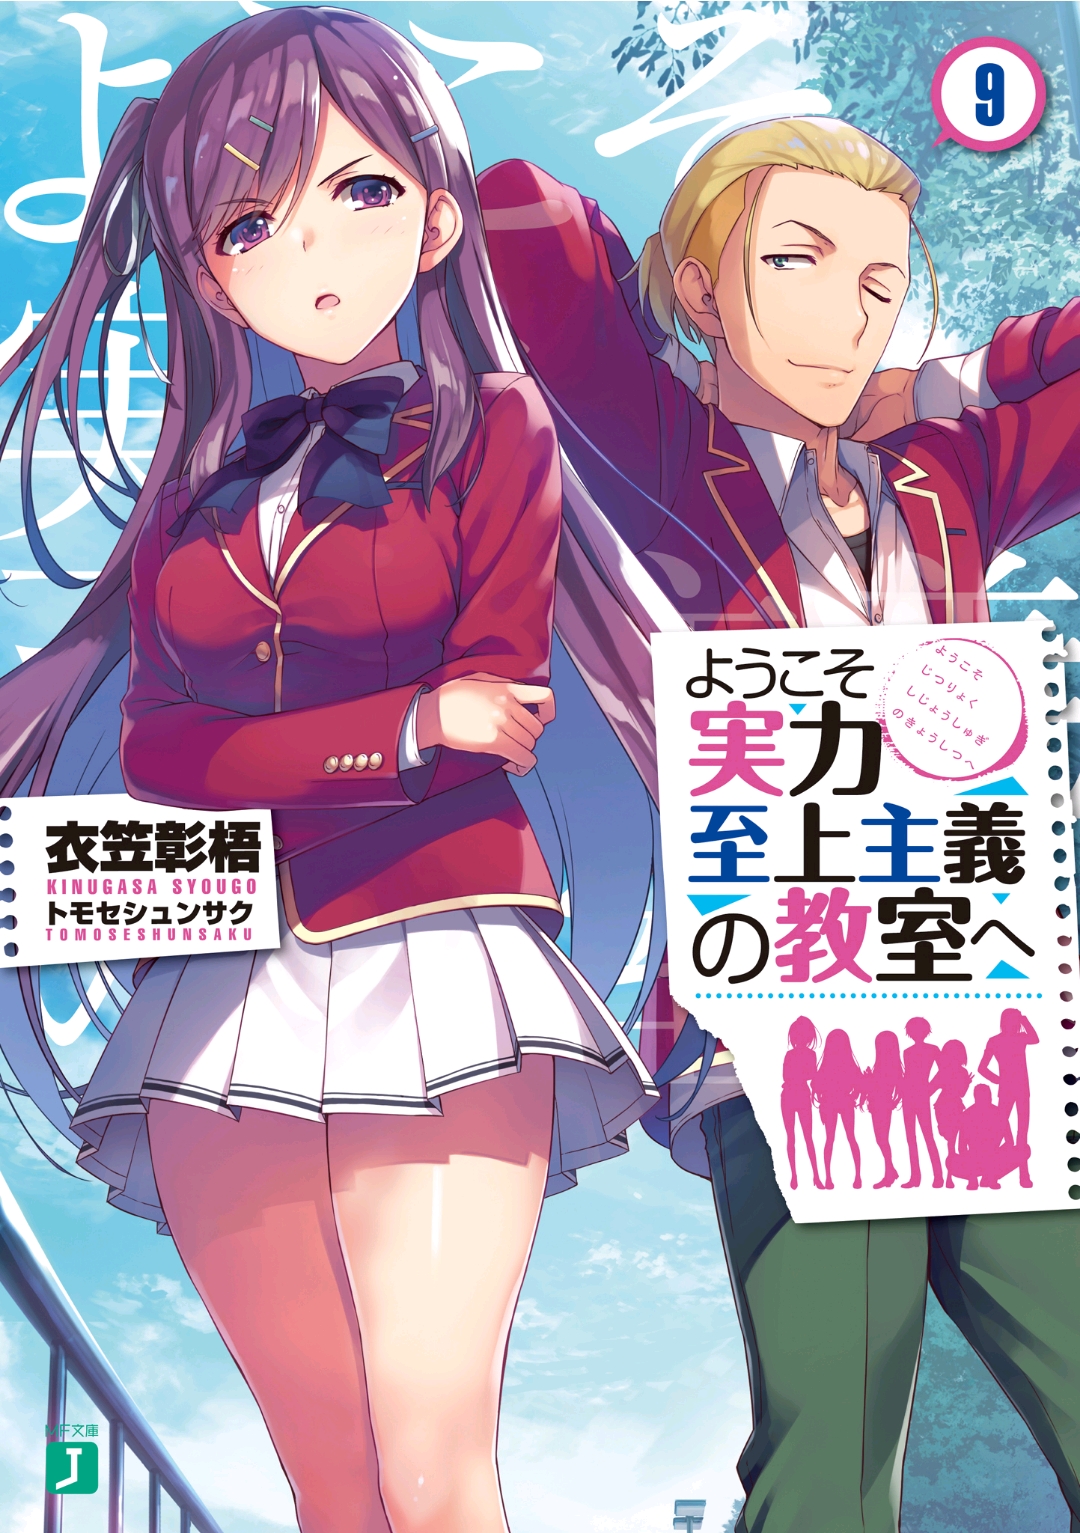 Hội những người yêu thích Light Novel - Tập 9 - Tensai Ouji no